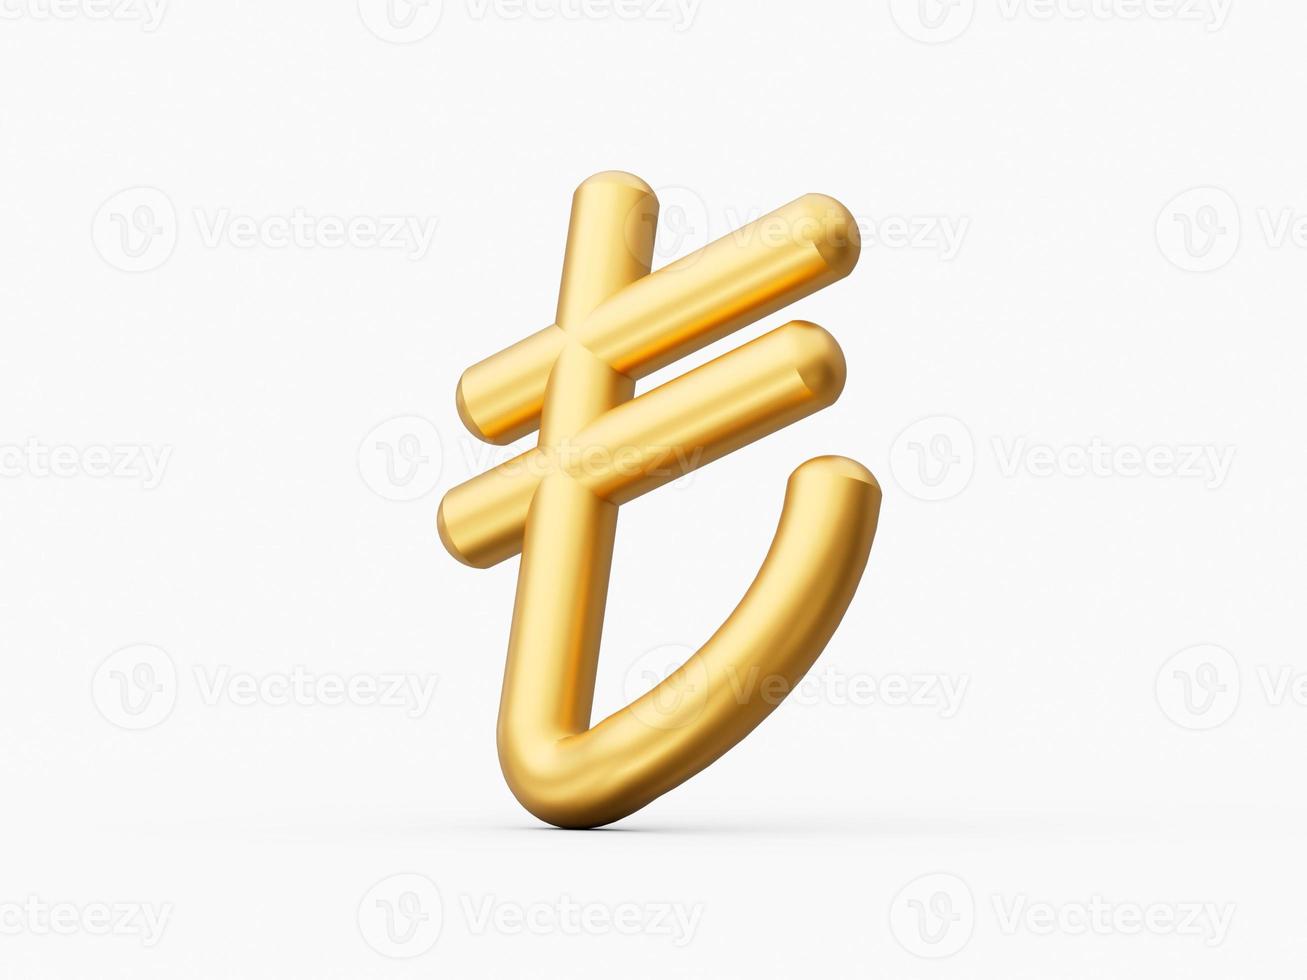 sinal de lira turca de ouro isolado na ilustração 3d de fundo branco foto